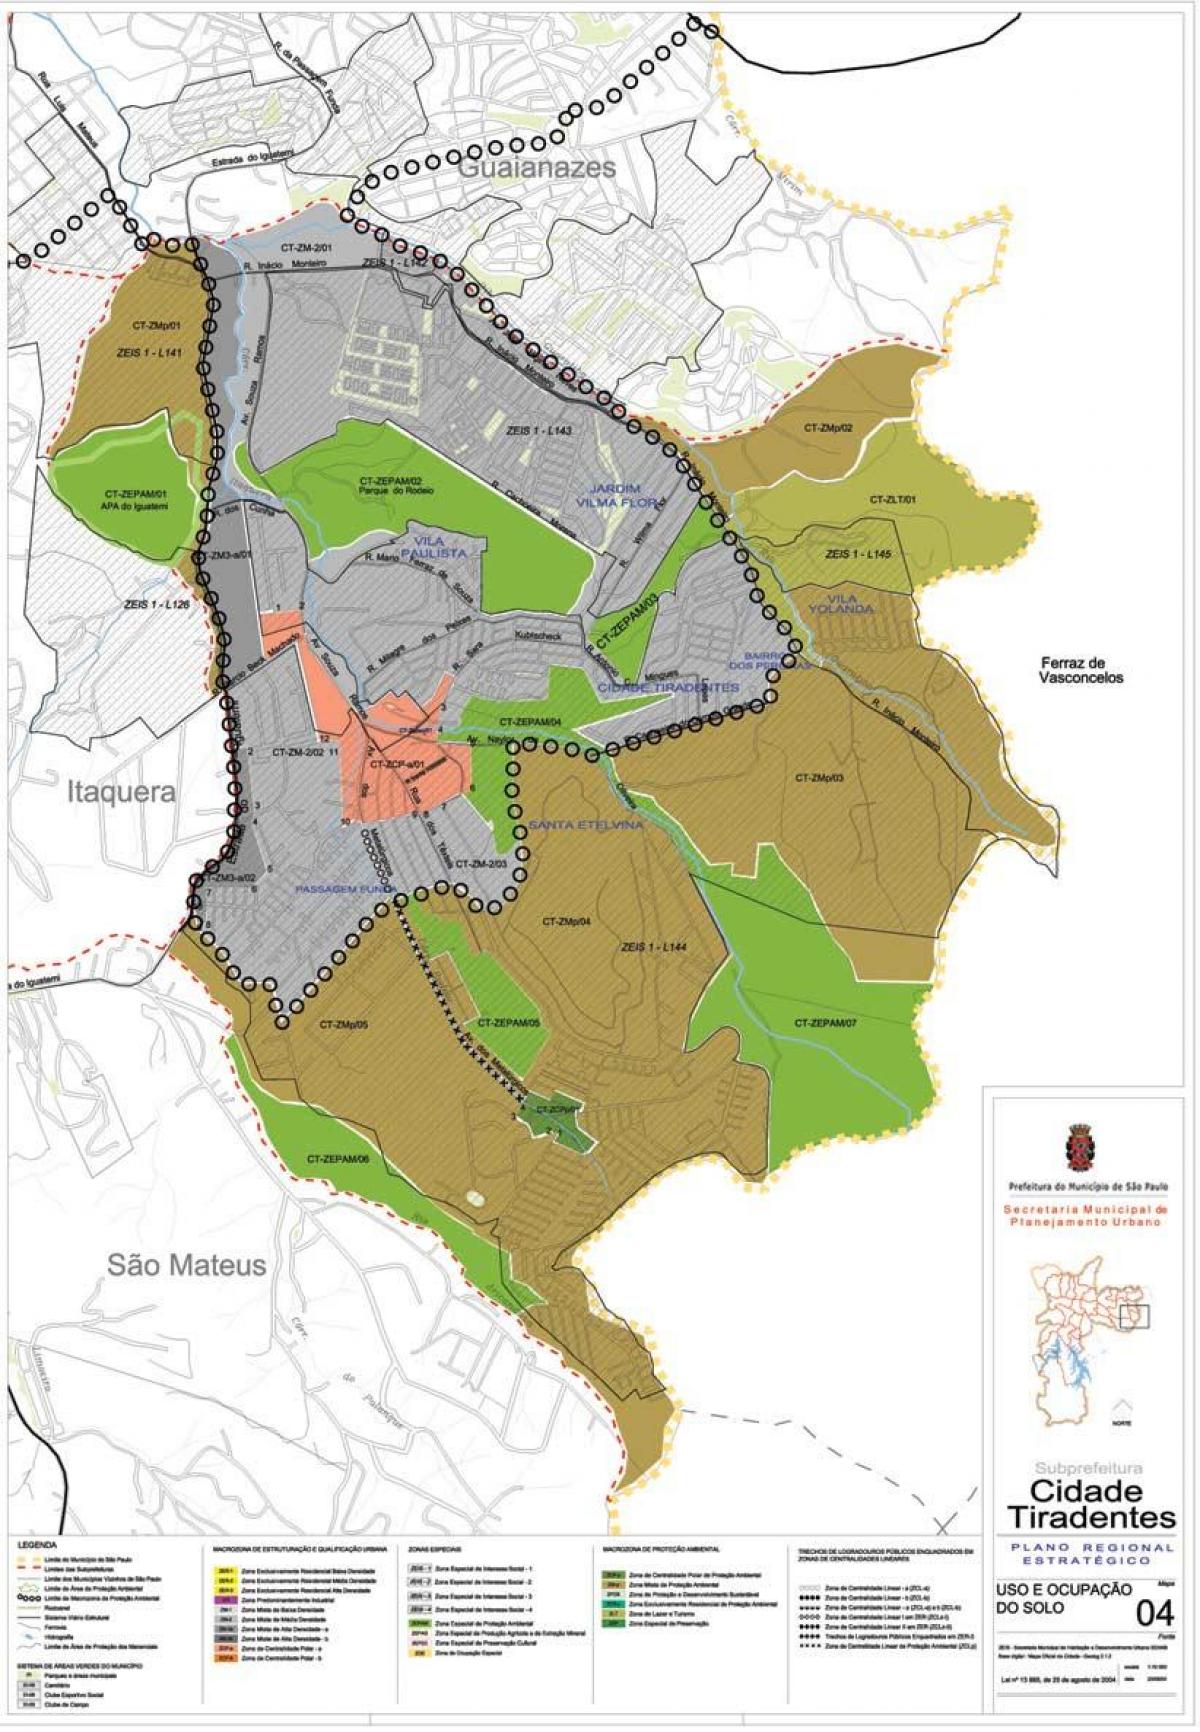 خريطة سيداد تيرادنتس ساو باولو - الاحتلال التربة